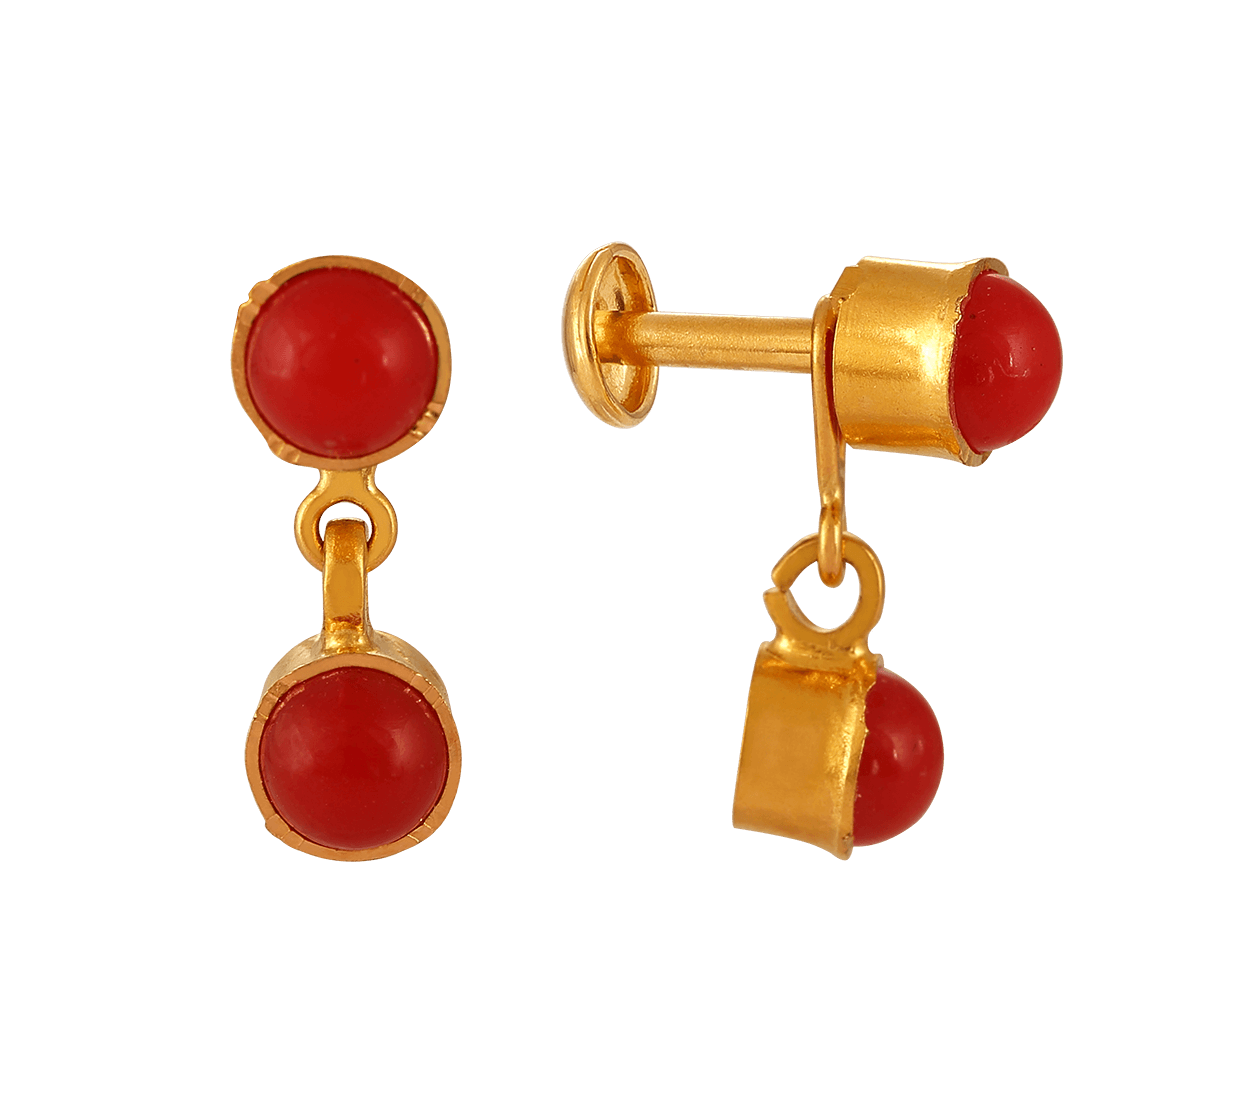 Buy Gold-Toned & Red Earrings for Women by STEFAN Online | Ajio.com